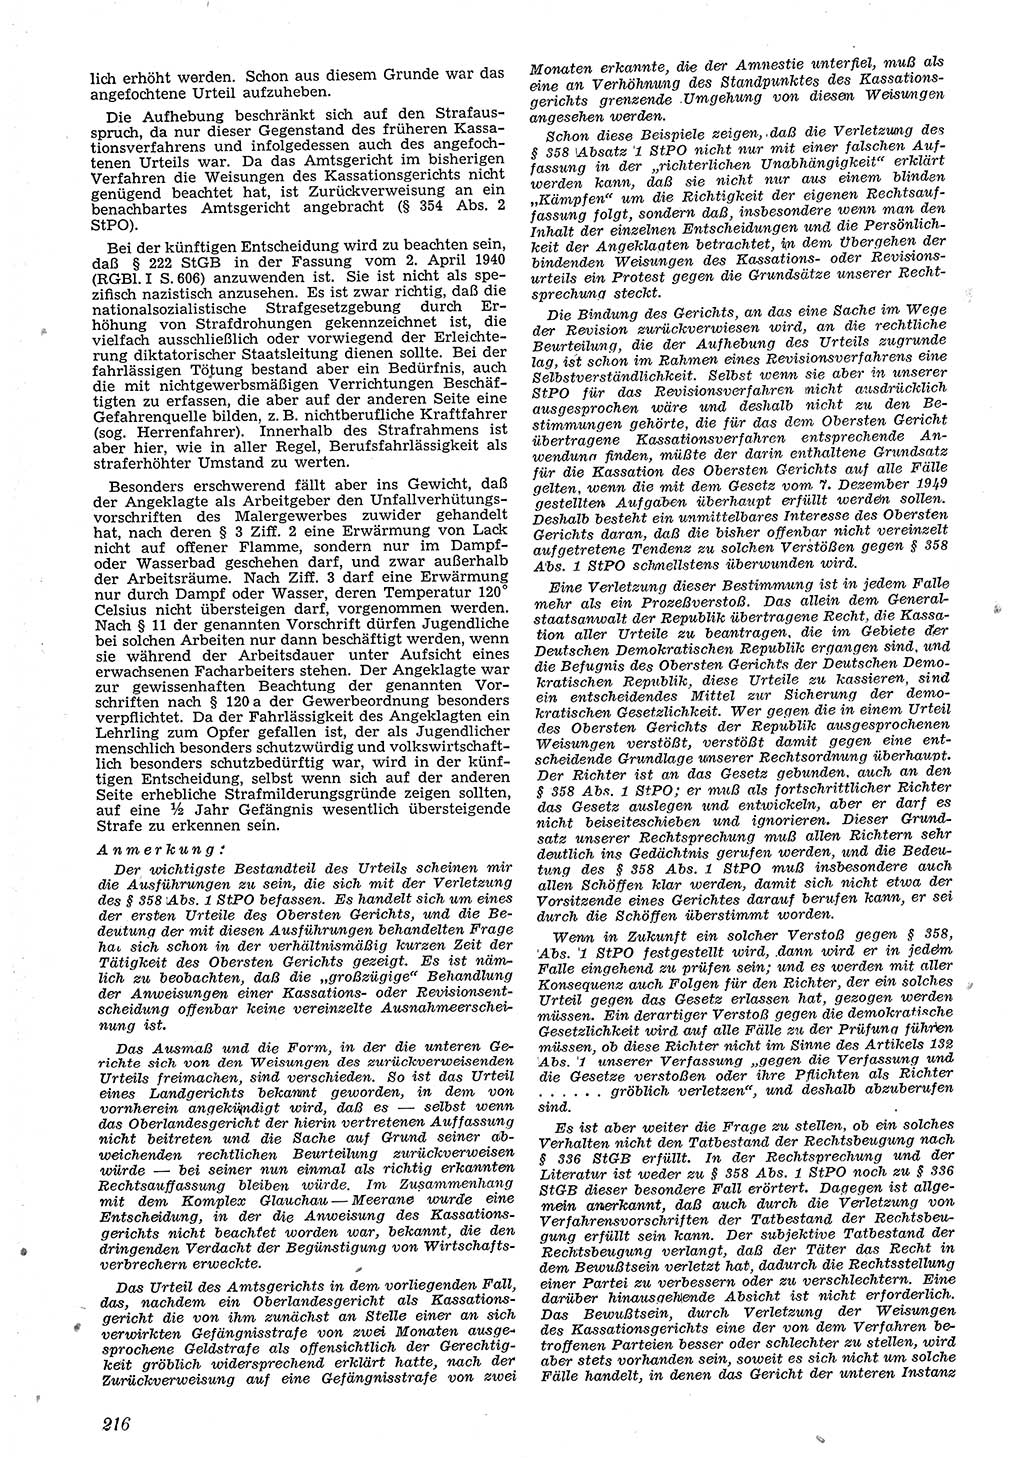 Neue Justiz (NJ), Zeitschrift für Recht und Rechtswissenschaft [Deutsche Demokratische Republik (DDR)], 4. Jahrgang 1950, Seite 216 (NJ DDR 1950, S. 216)